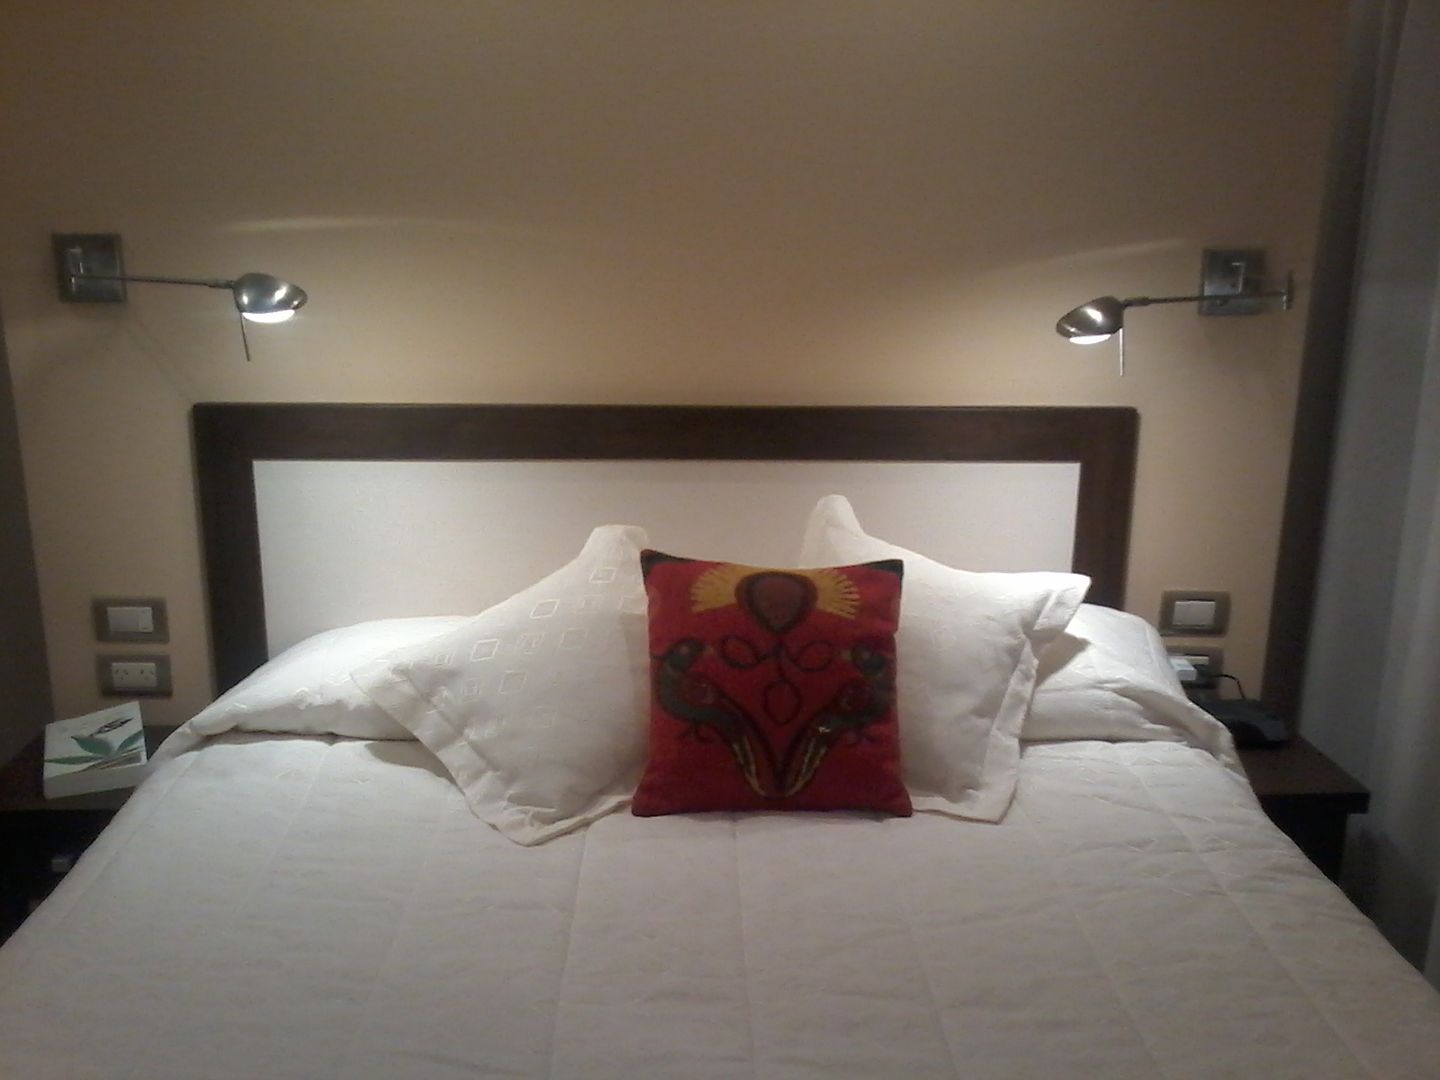 Detalle de cabecera de cama apoyada sobre tabique divisor y de los artefactos iluminación tipo apliques móviles. D&C Interiores Dormitorios modernos